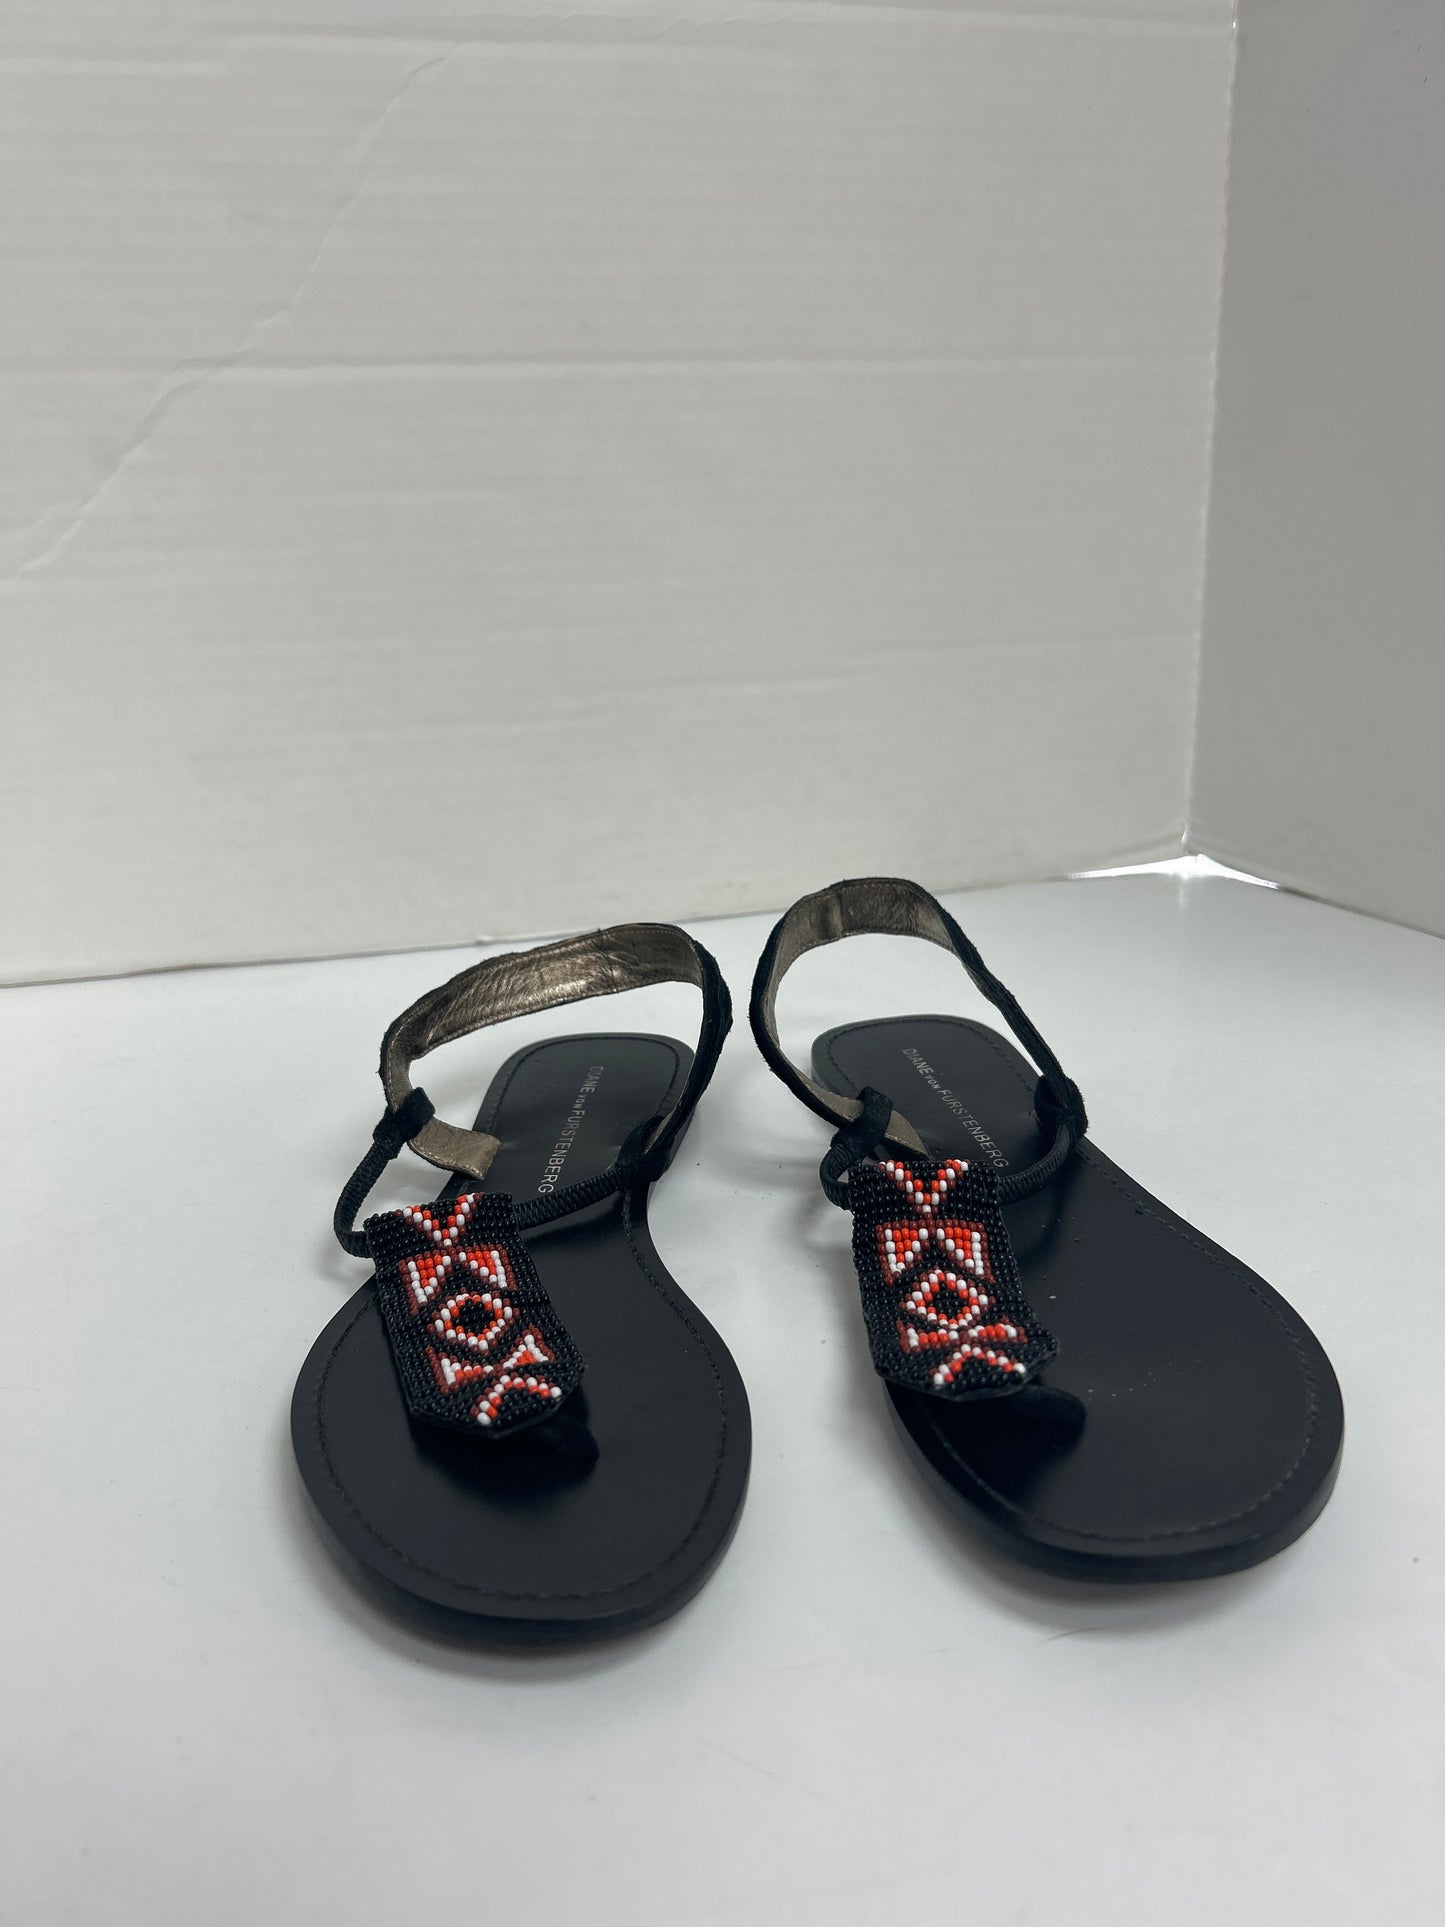 Sandals Flip Flops By Diane Von Furstenberg  Size: 6